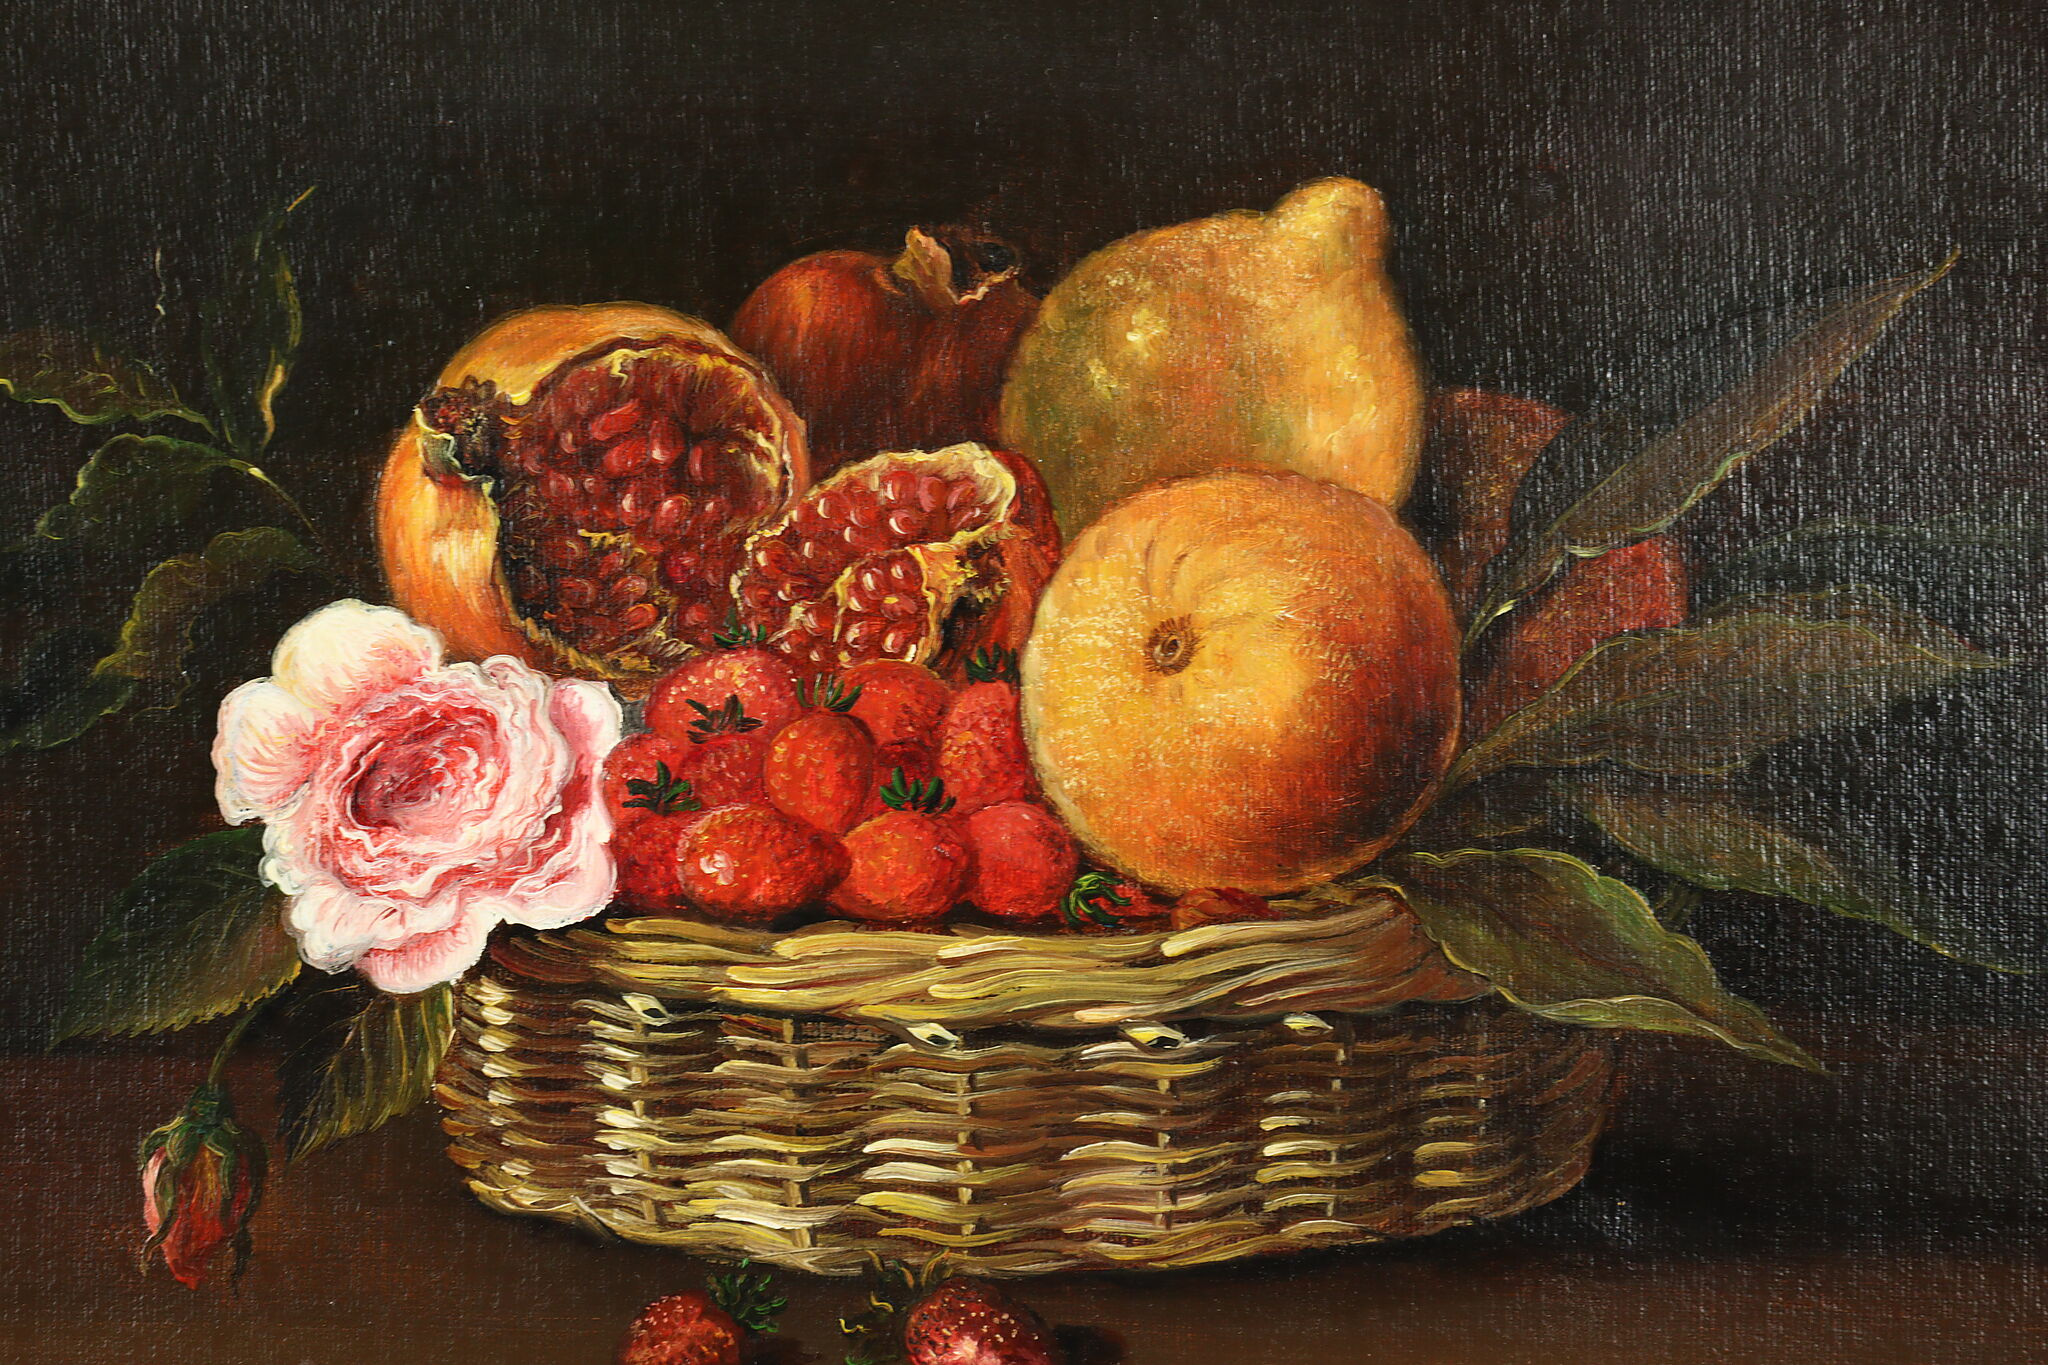 fruit basket painting